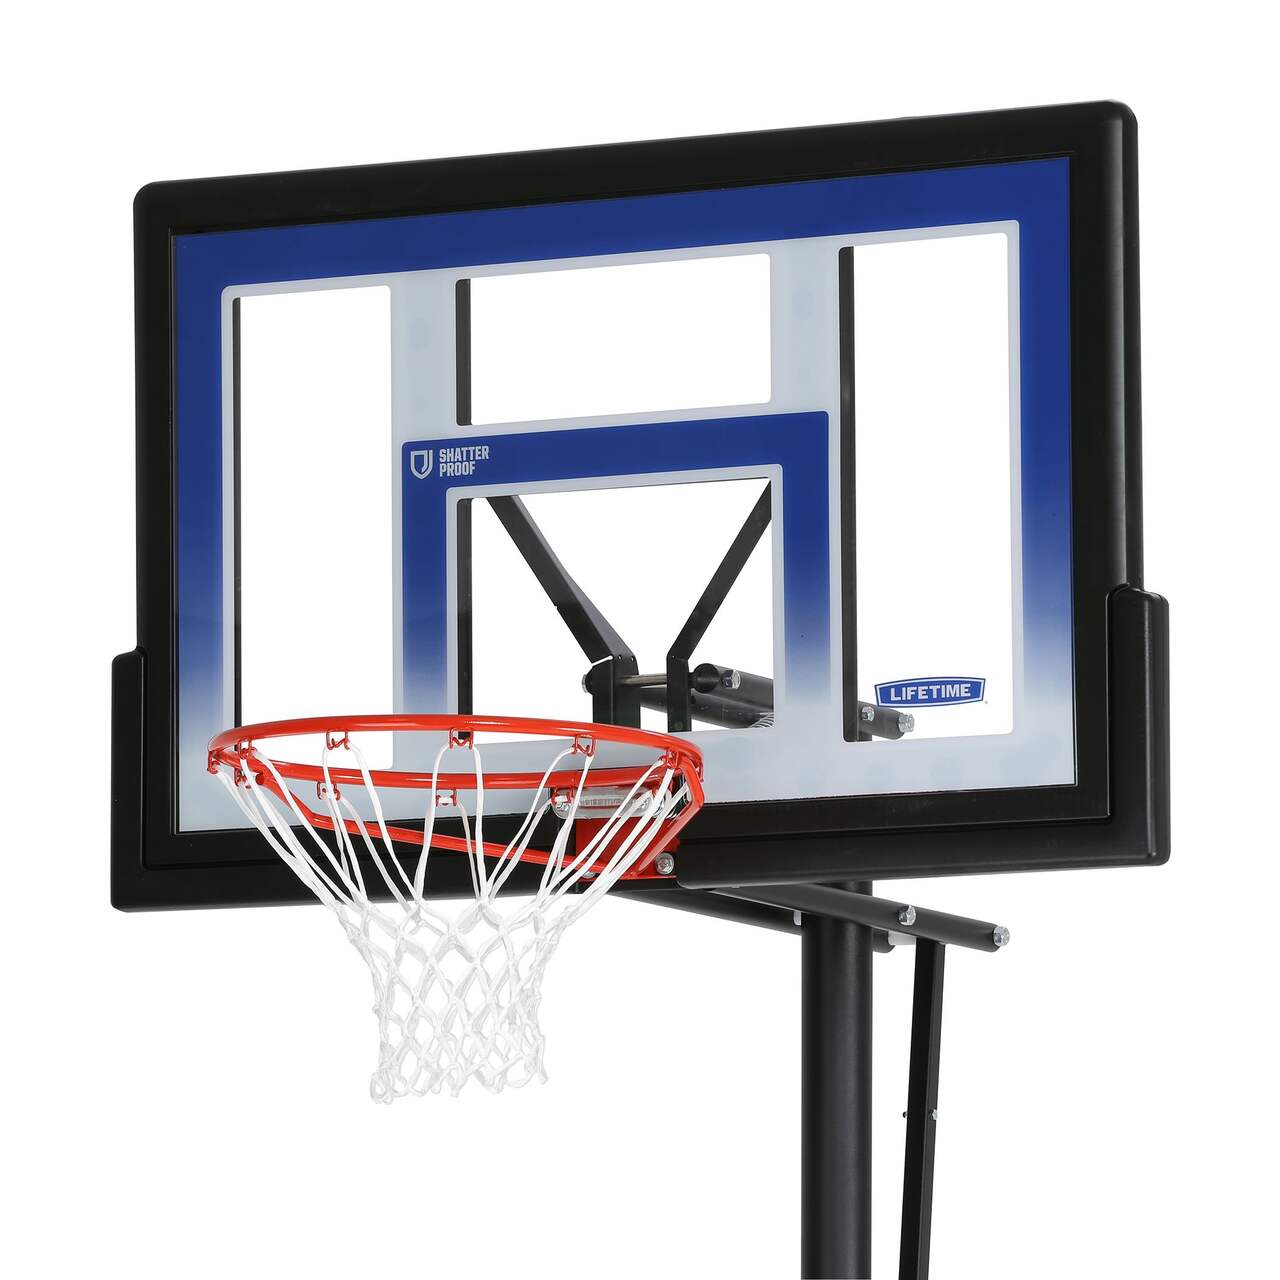 SKLZ Pro Mini Kids' Portable Adjustable Poolside Basketball Backboard, Hoop  & Net System w/ Ball, 33-in